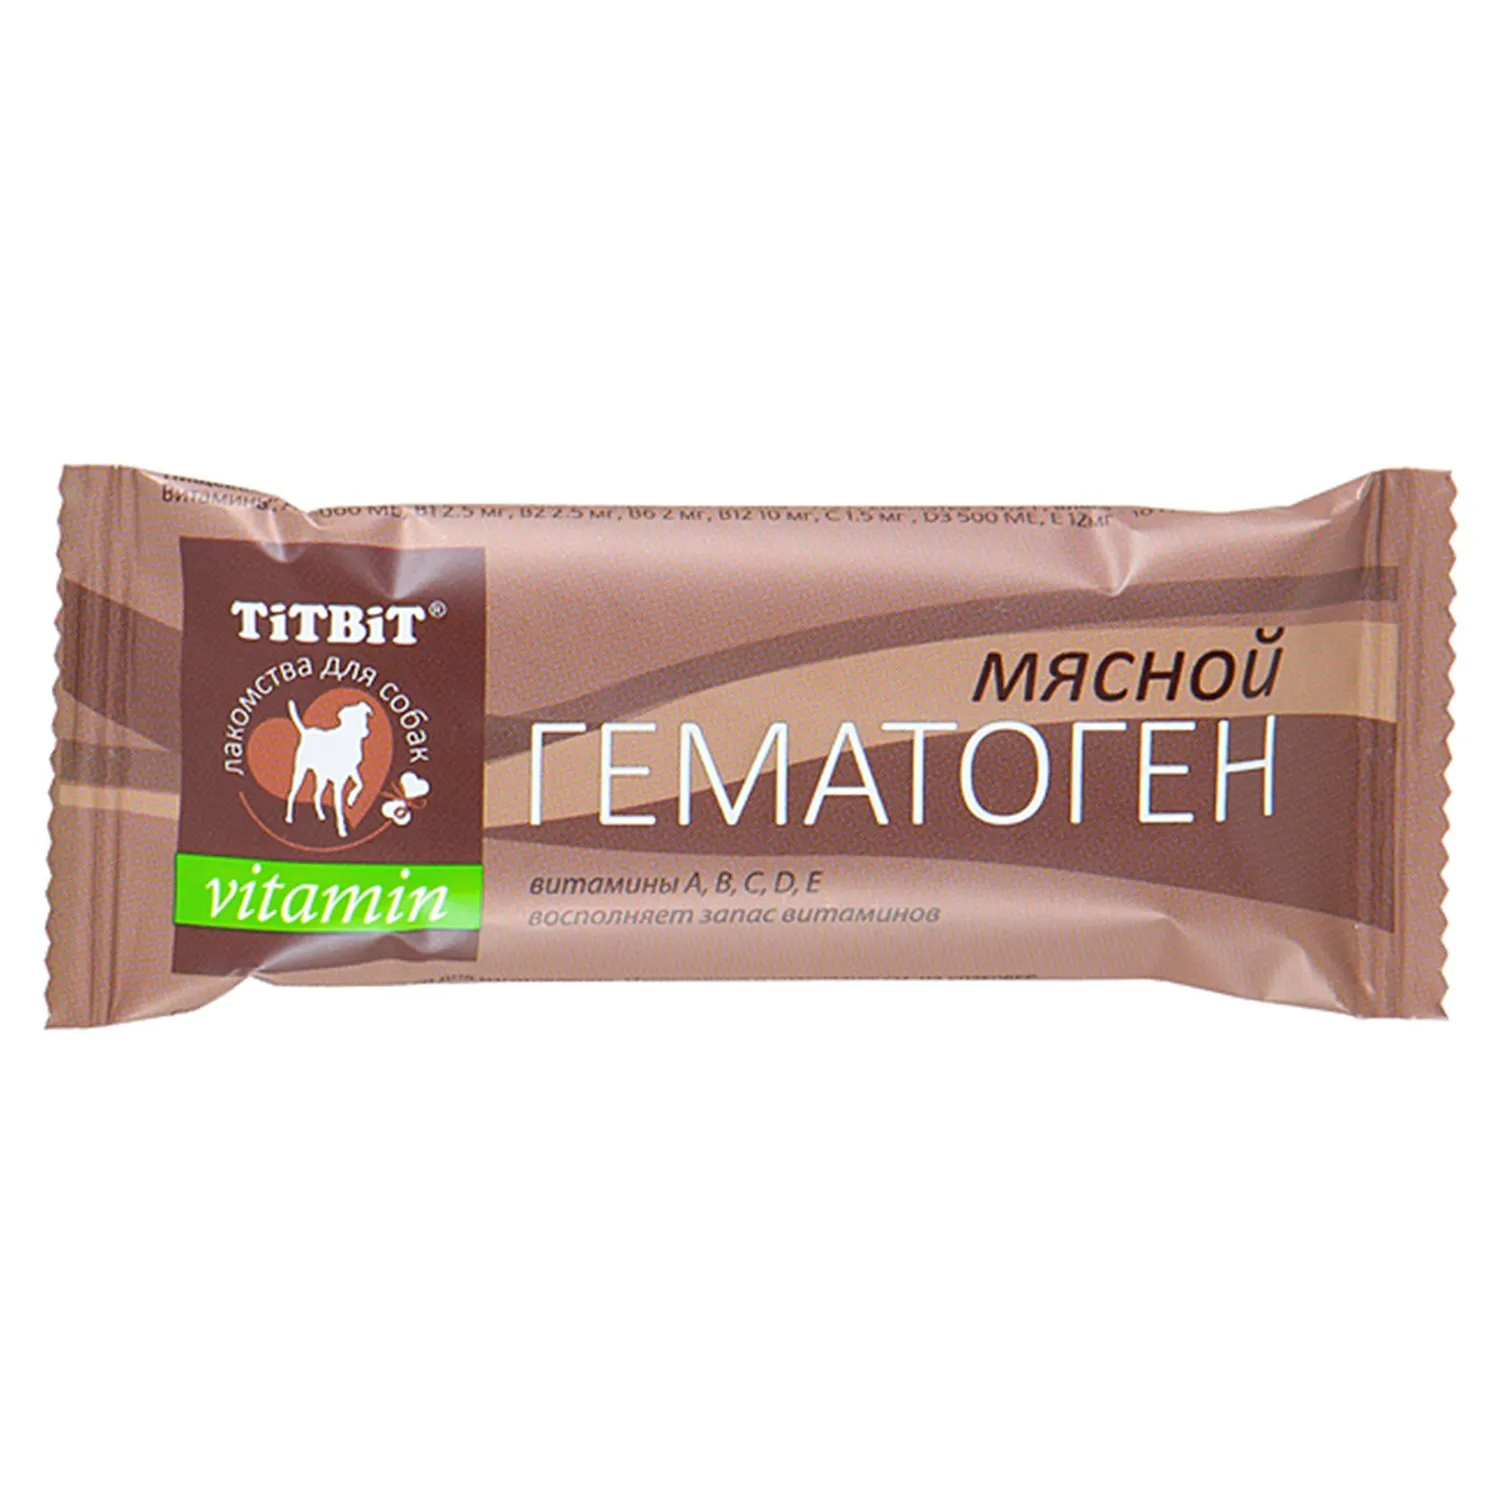 Лакомство TiTBiT Гематоген мясной для собак vitamin 35 г